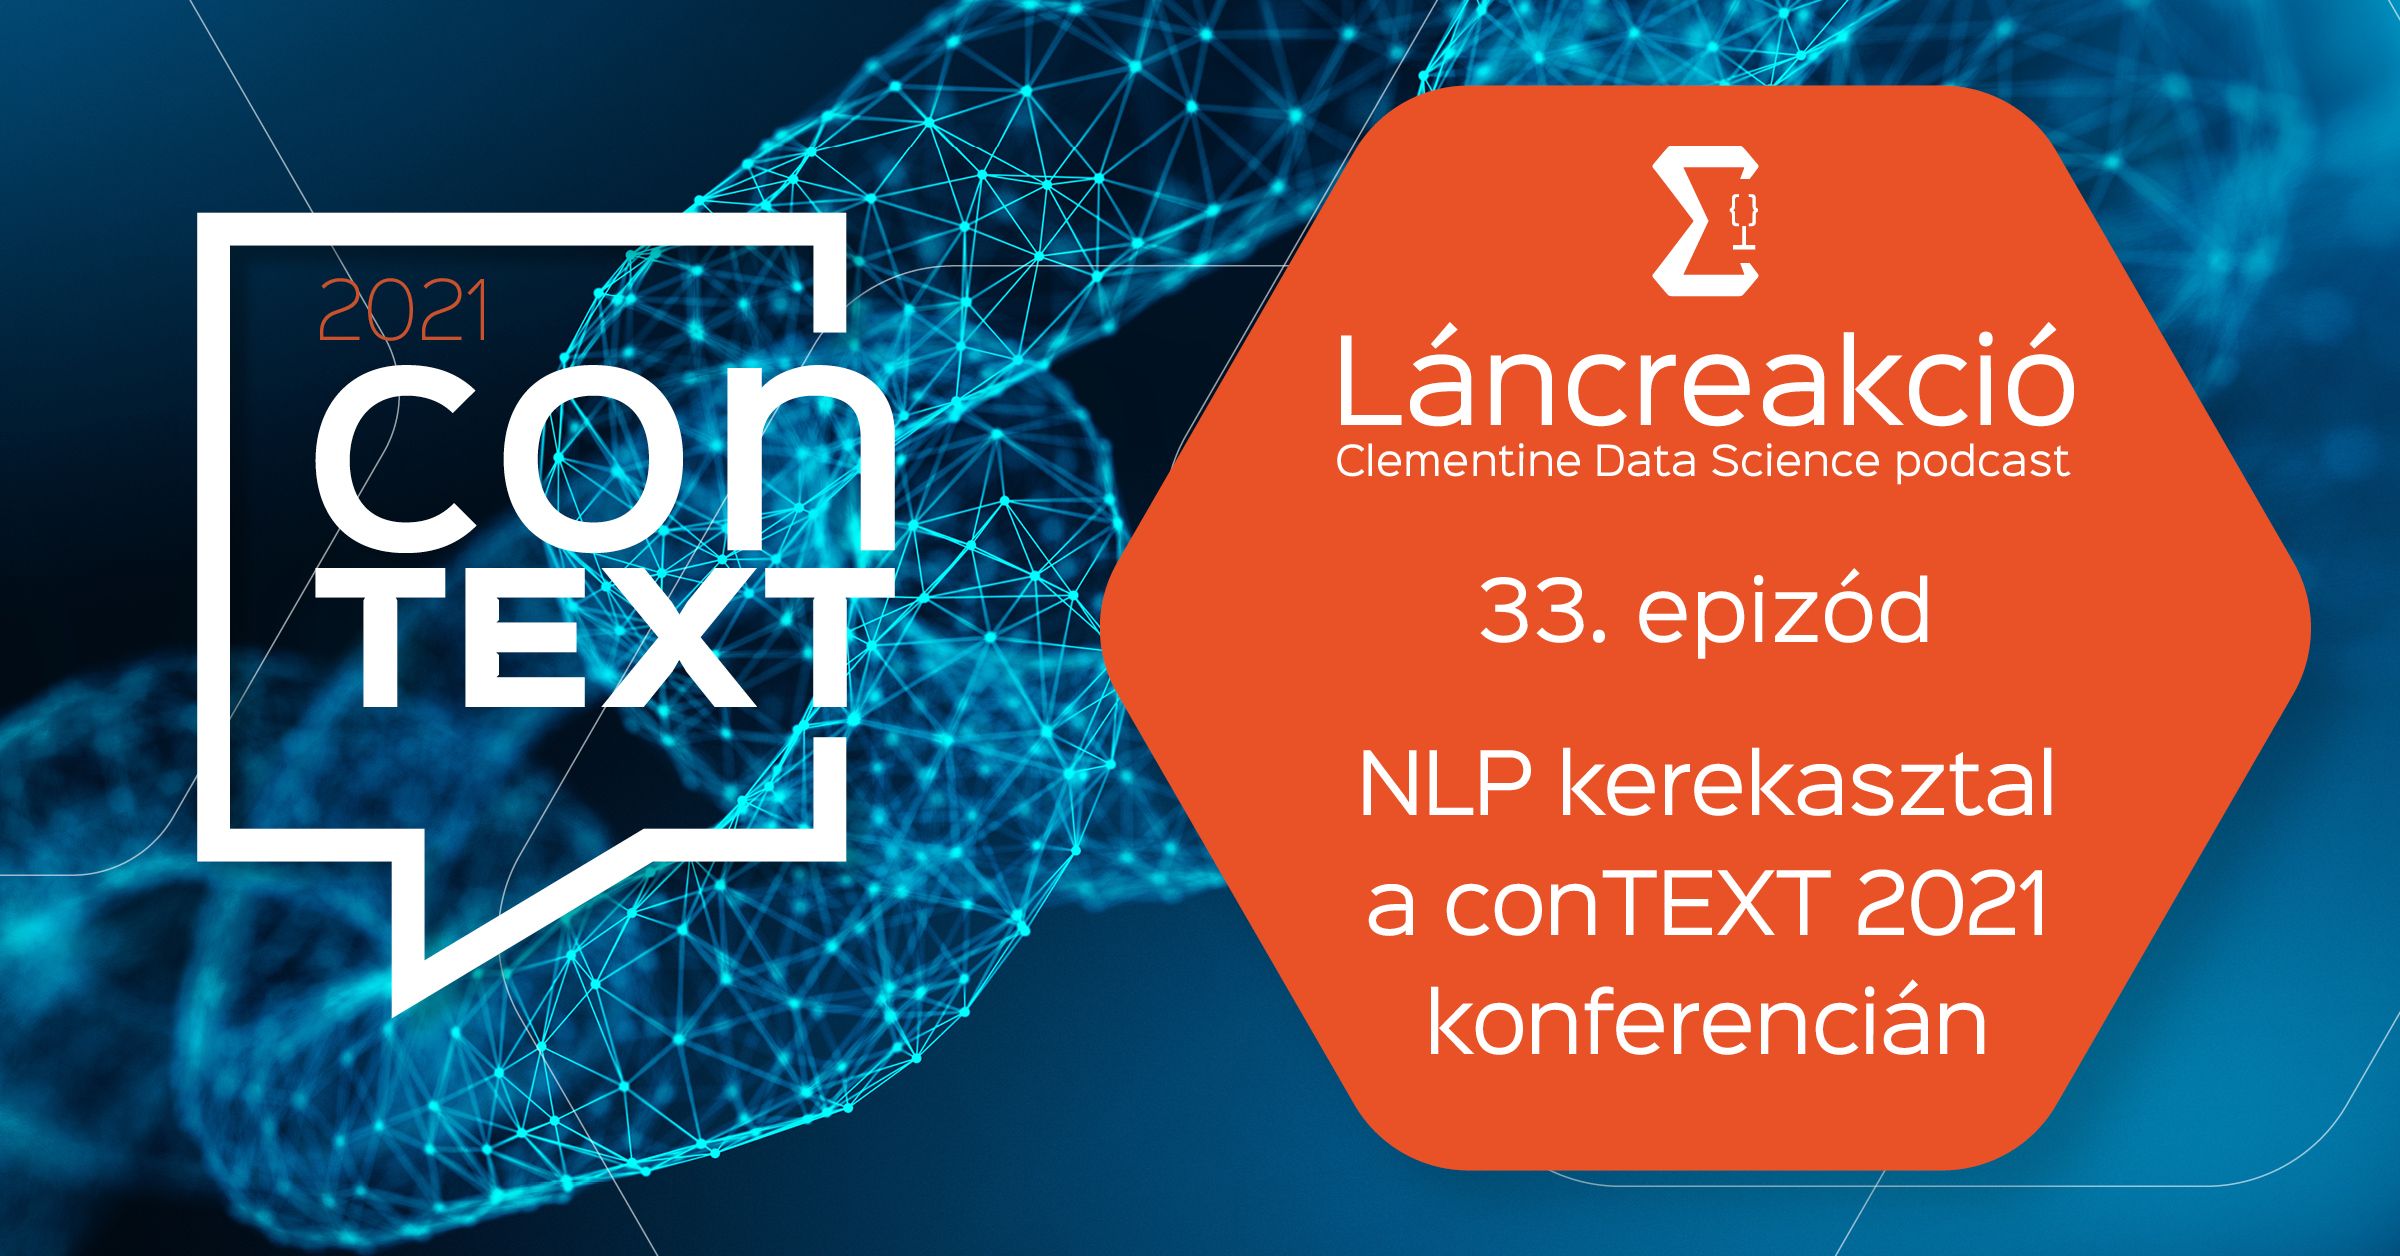 NLP kerekasztal a conTEXT 2021 konferencián